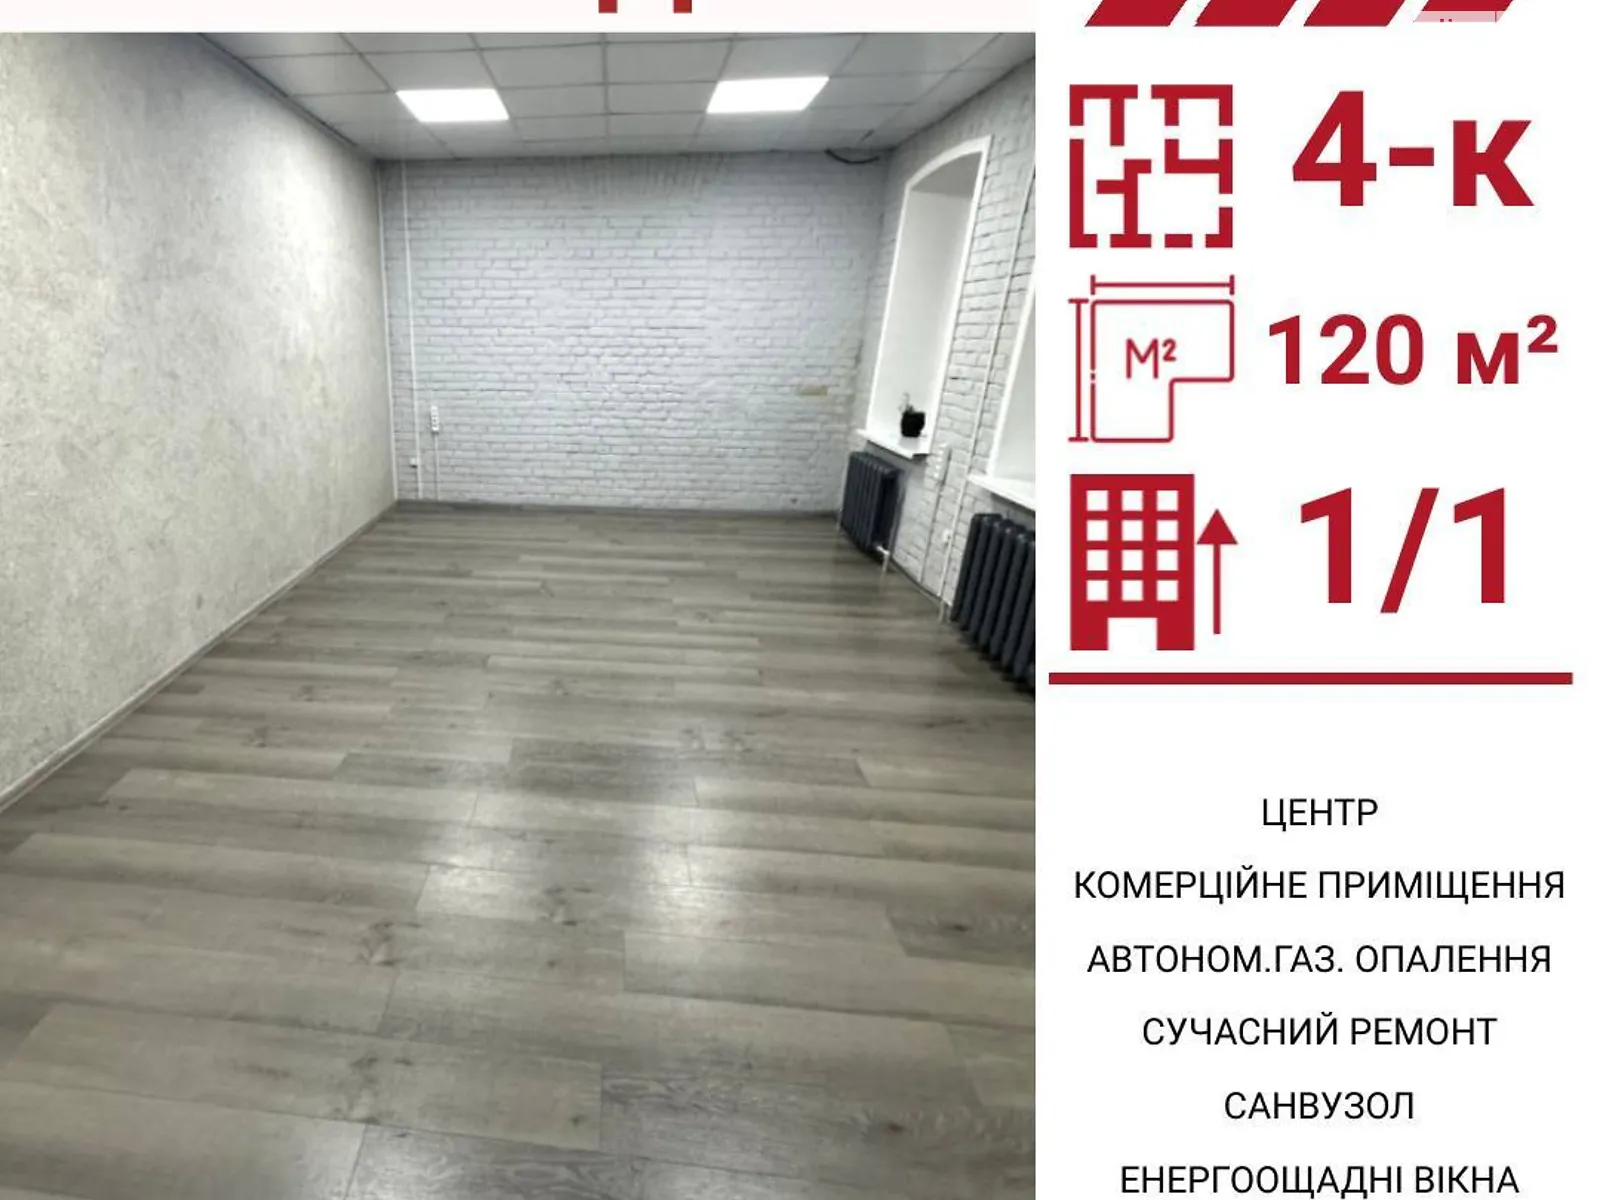 Сдается в аренду офис 120 кв. м в бизнес-центре, цена: 35000 грн